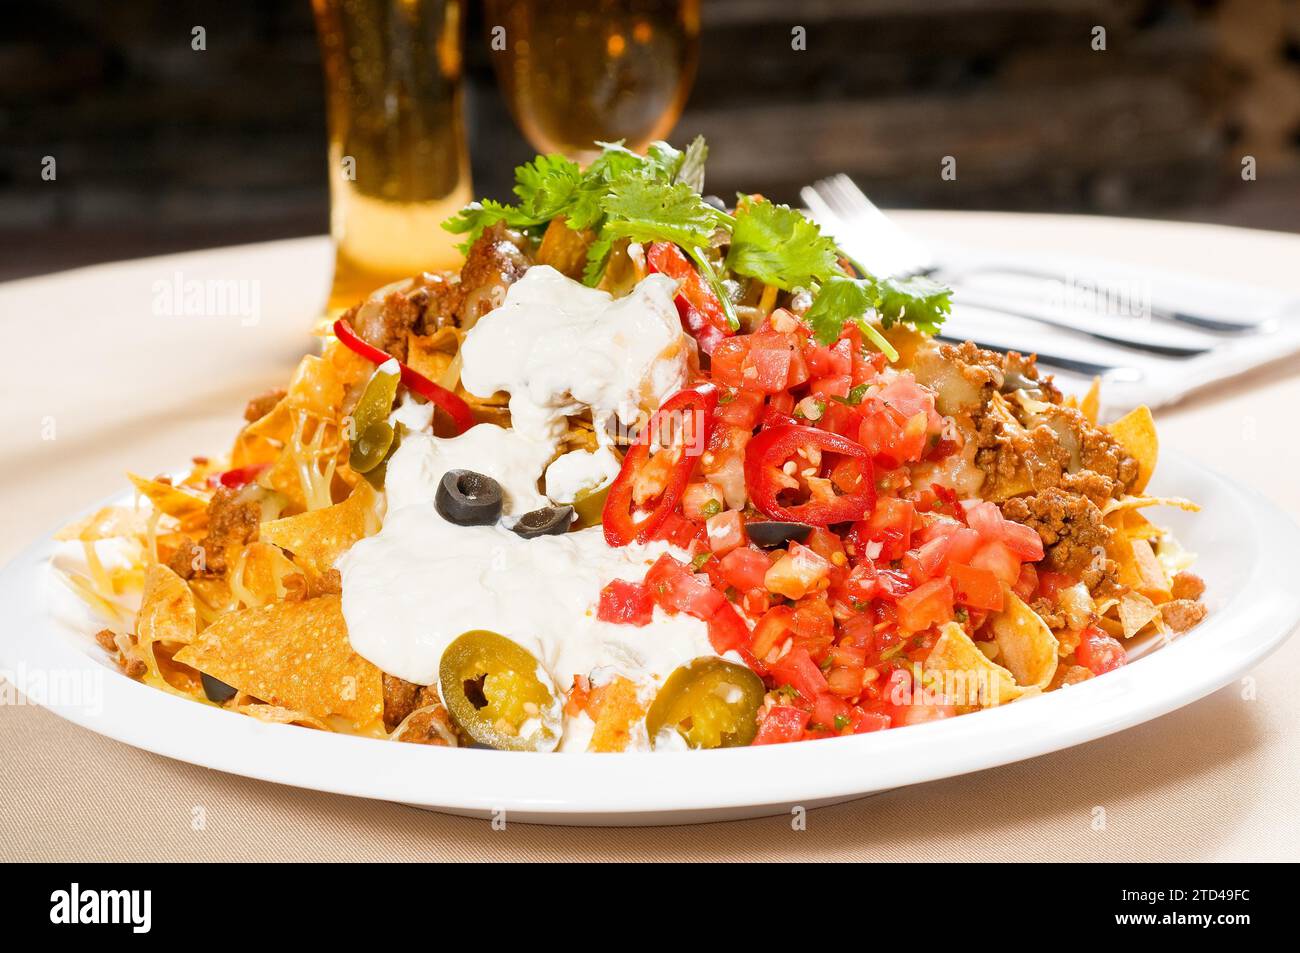 Nachos frais et salade de légumes avec viande, Chili con carne, nourriture mexicaine tipycal, photographie alimentaire Banque D'Images